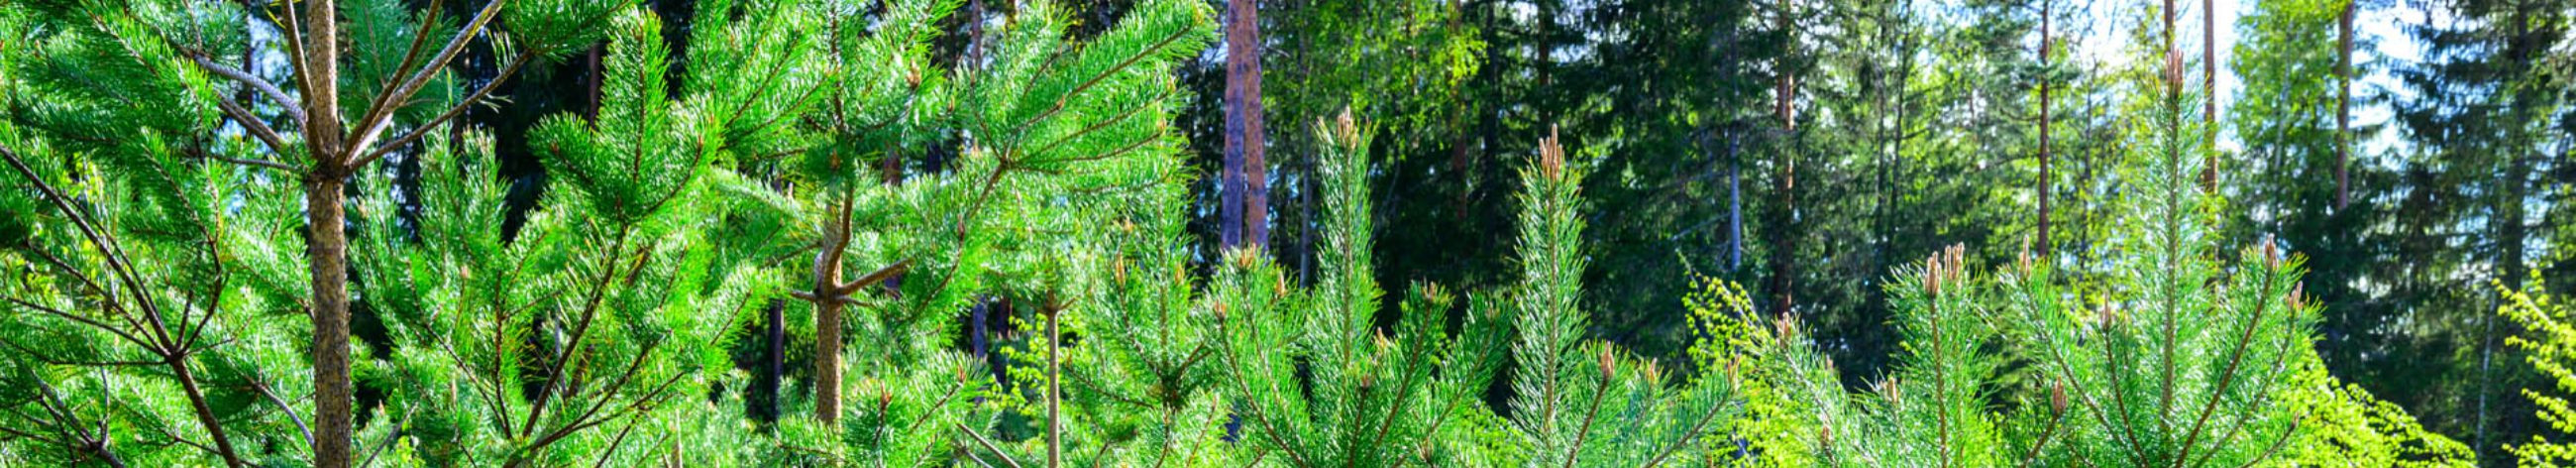 Valga Puu OÜ on 1999. aastal asutatud metsamajandamisega tegelev ettevõte, mis kuulub metsanduskontserni Graanul Mets.